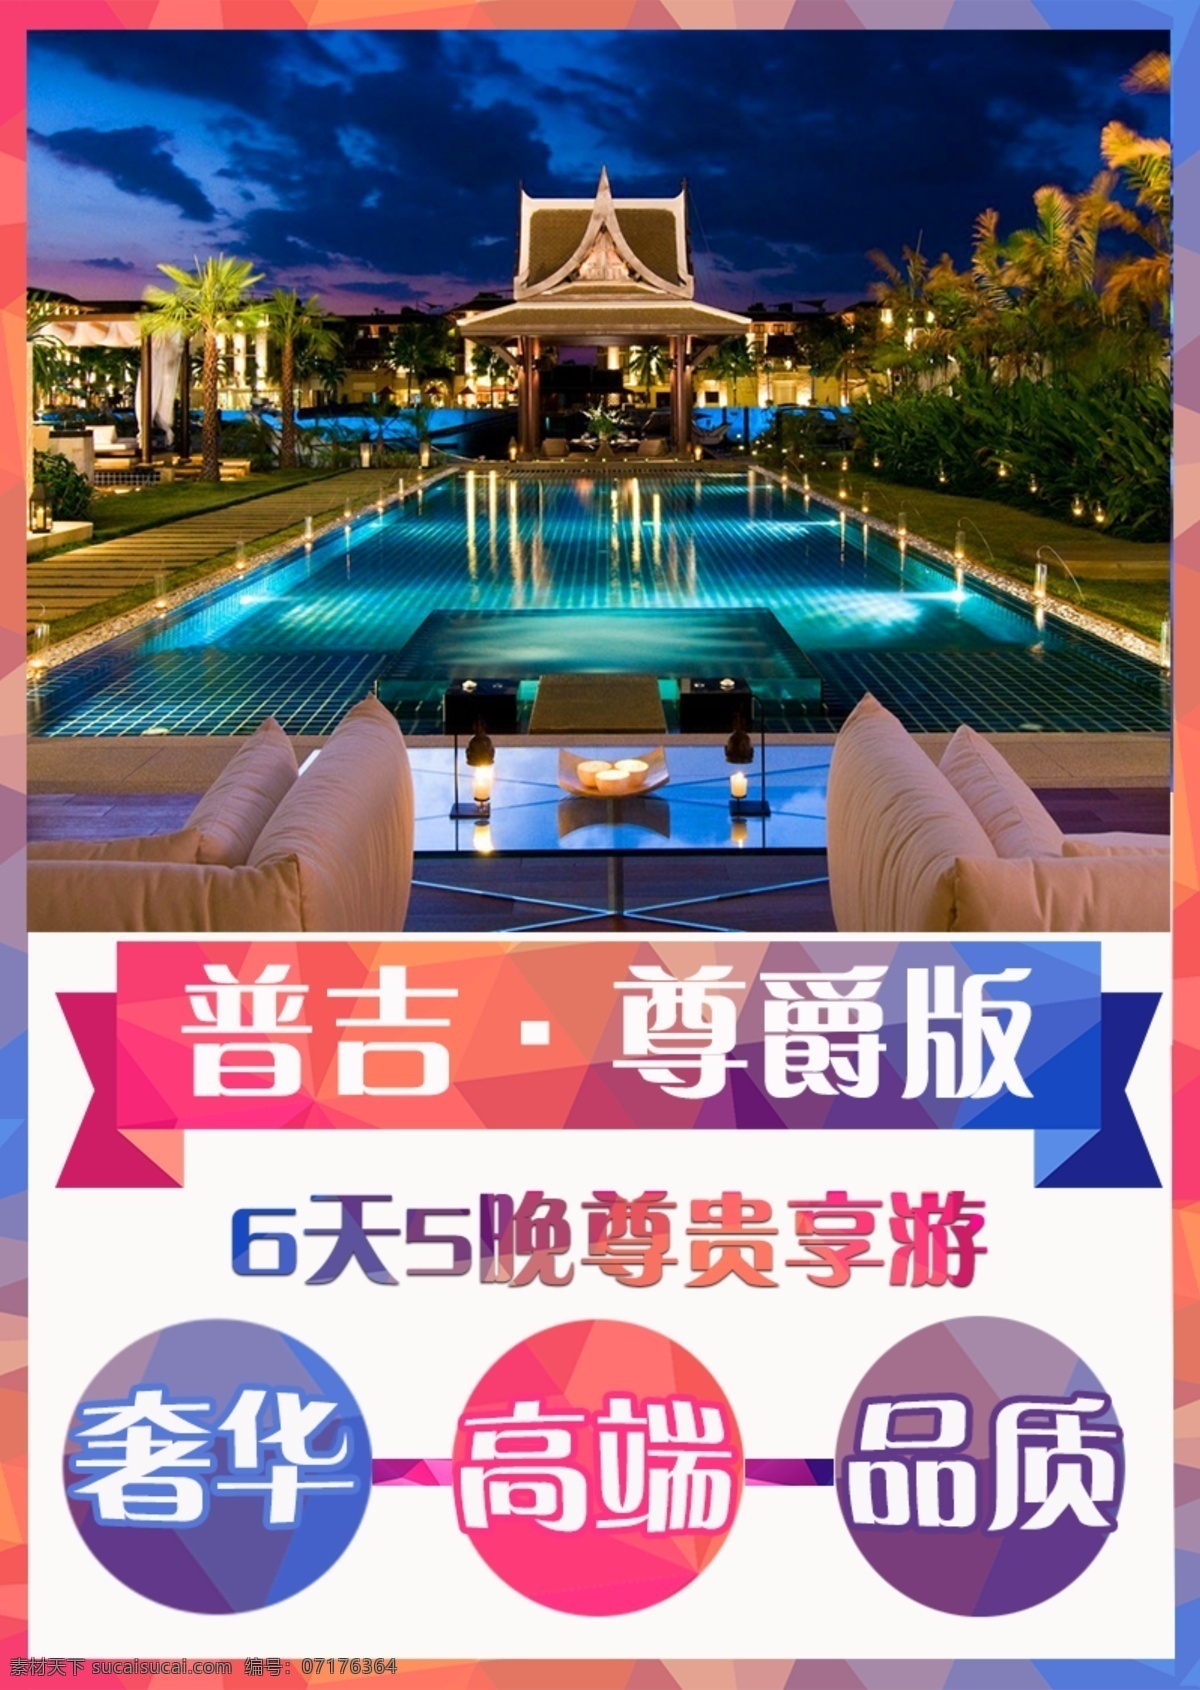 行程封面 泰国 普吉 旅游 休假 dm宣传单